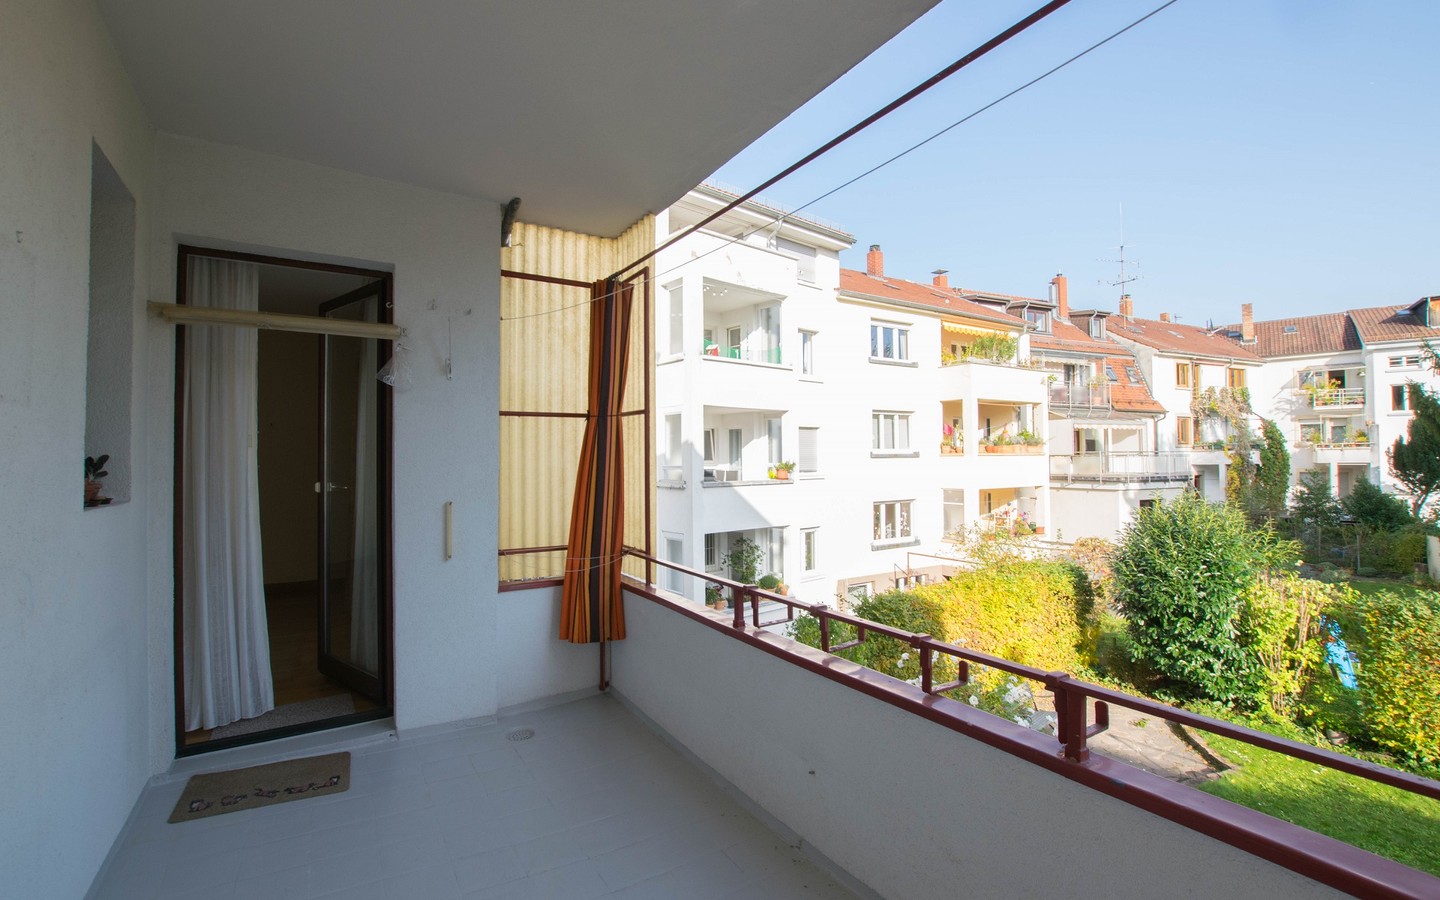 Balkon - Heidelberg-Neuenheim - Toplage Quinckestraße: Bezugsfreie 3 Zimmerwohnung mit großem Balkon